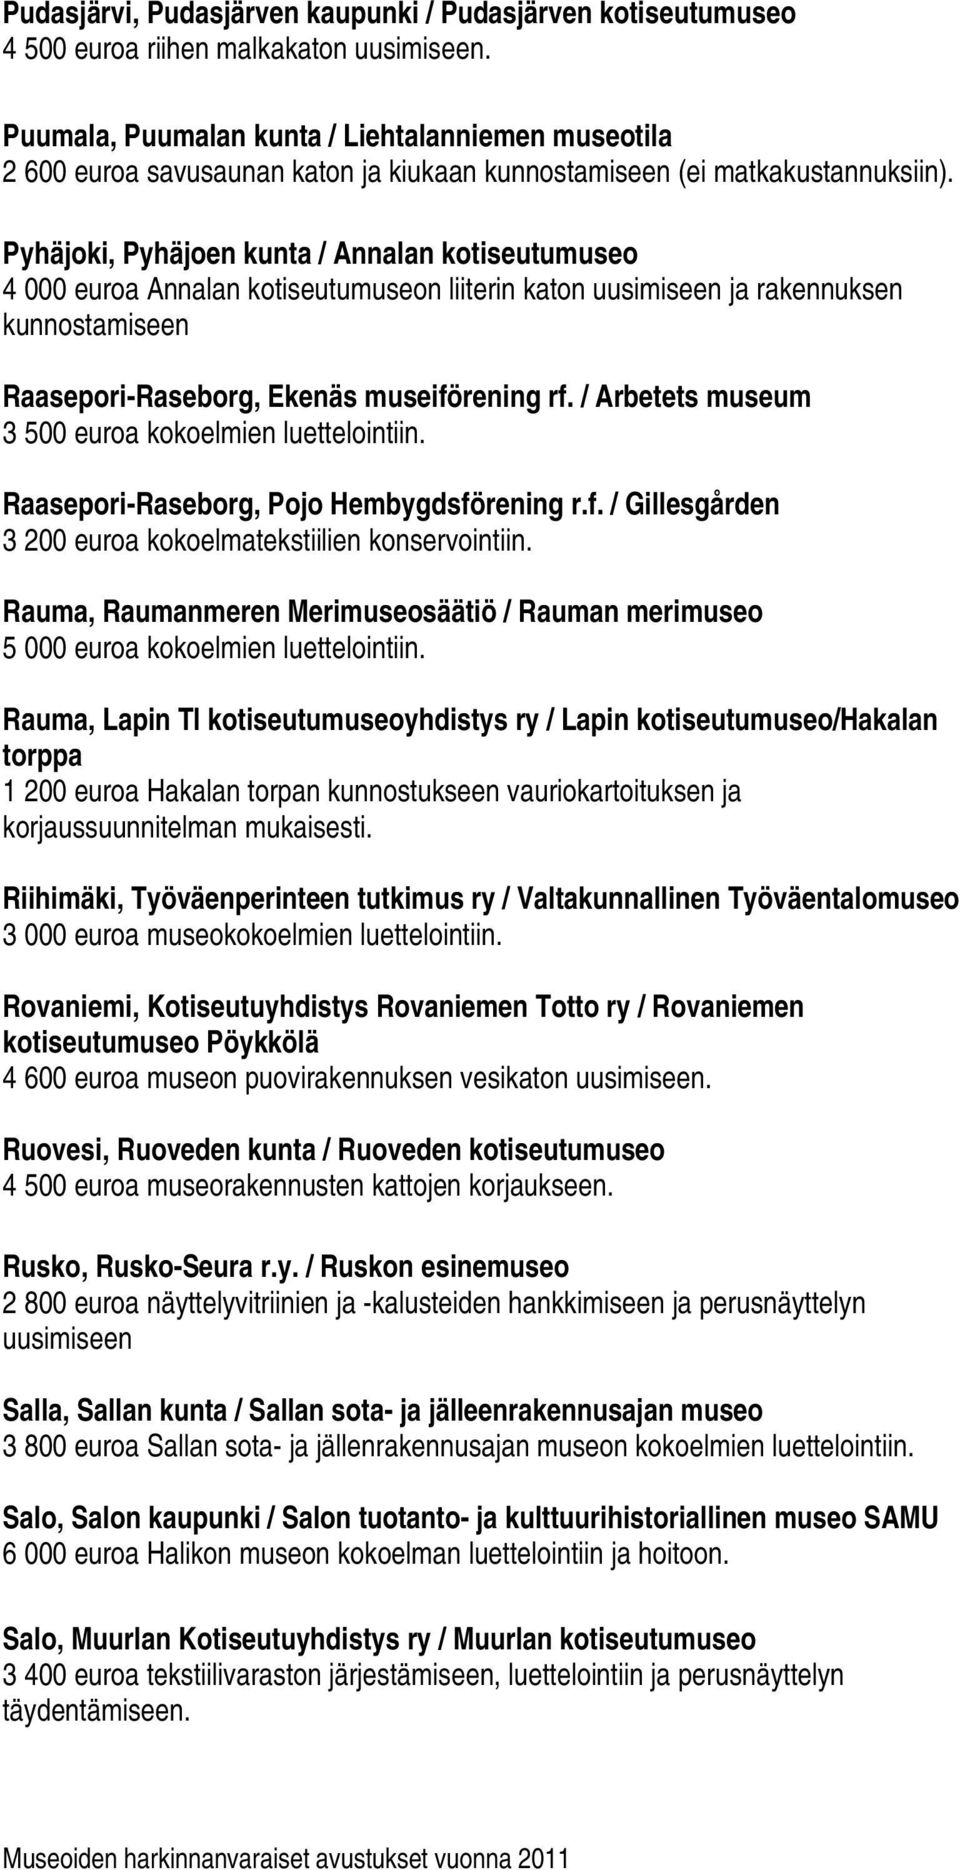 Pyhäjoki, Pyhäjoen kunta / Annalan kotiseutumuseo 4 000 euroa Annalan kotiseutumuseon liiterin katon uusimiseen ja rakennuksen kunnostamiseen Raasepori-Raseborg, Ekenäs museiförening rf.